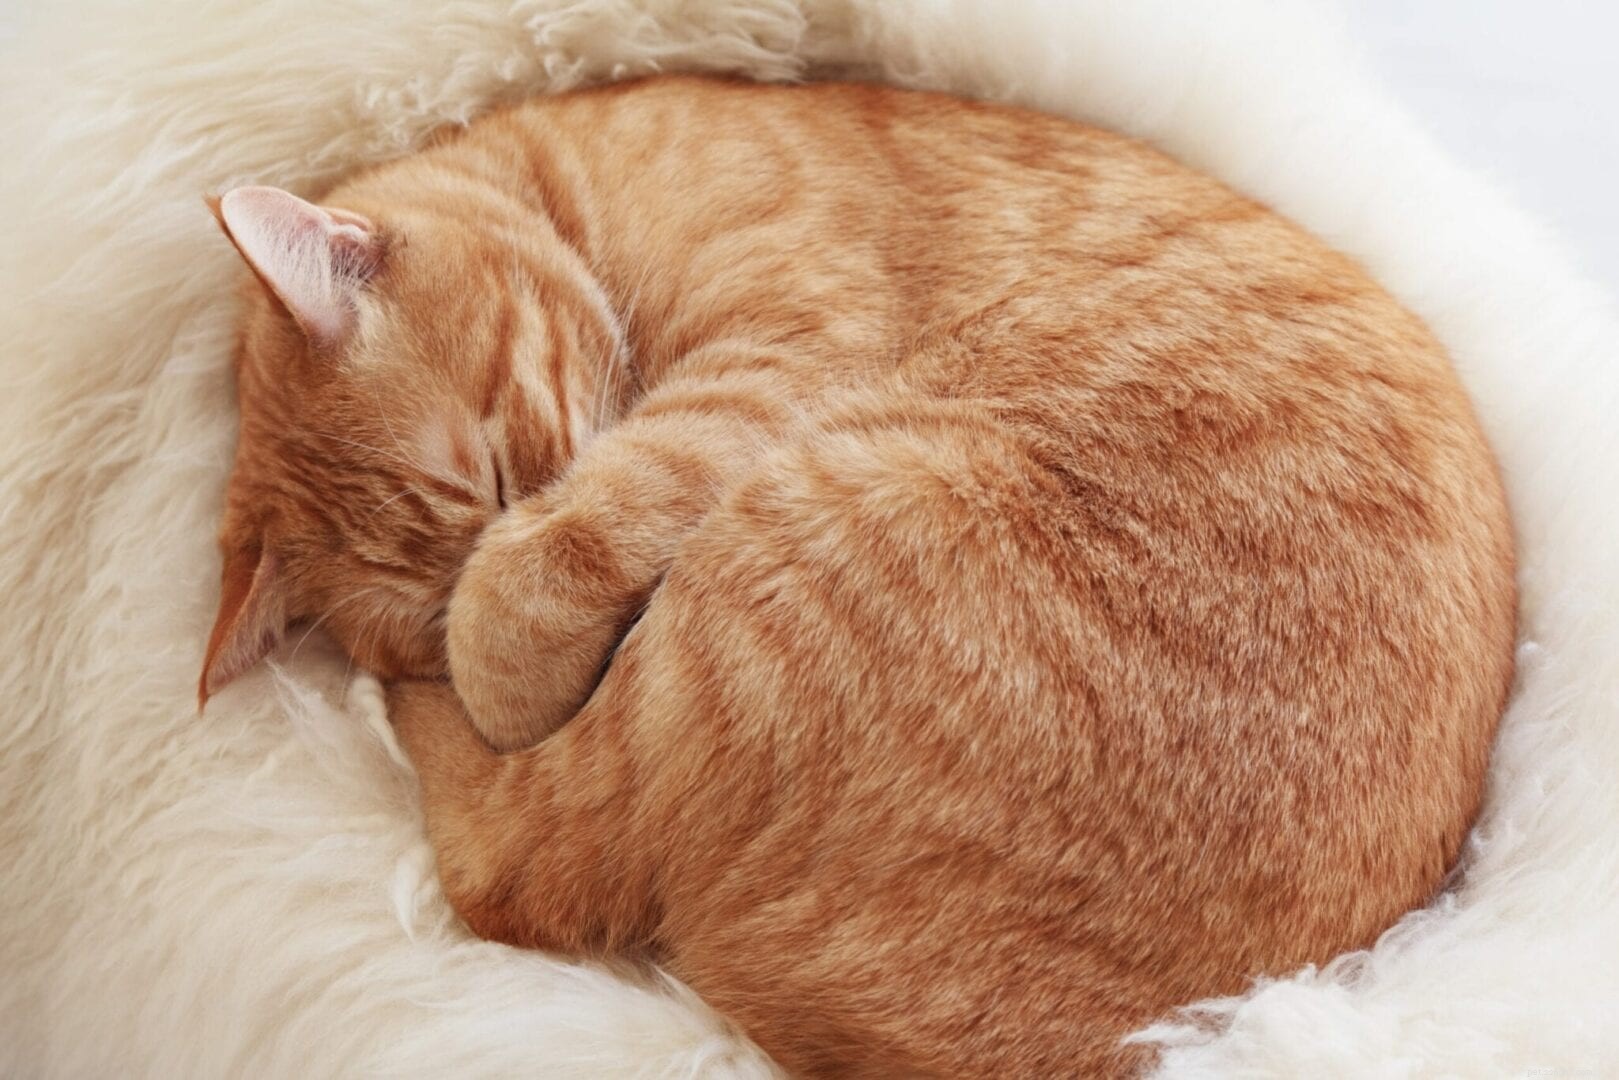 Perché i gatti si rannicchiano quando dormono?